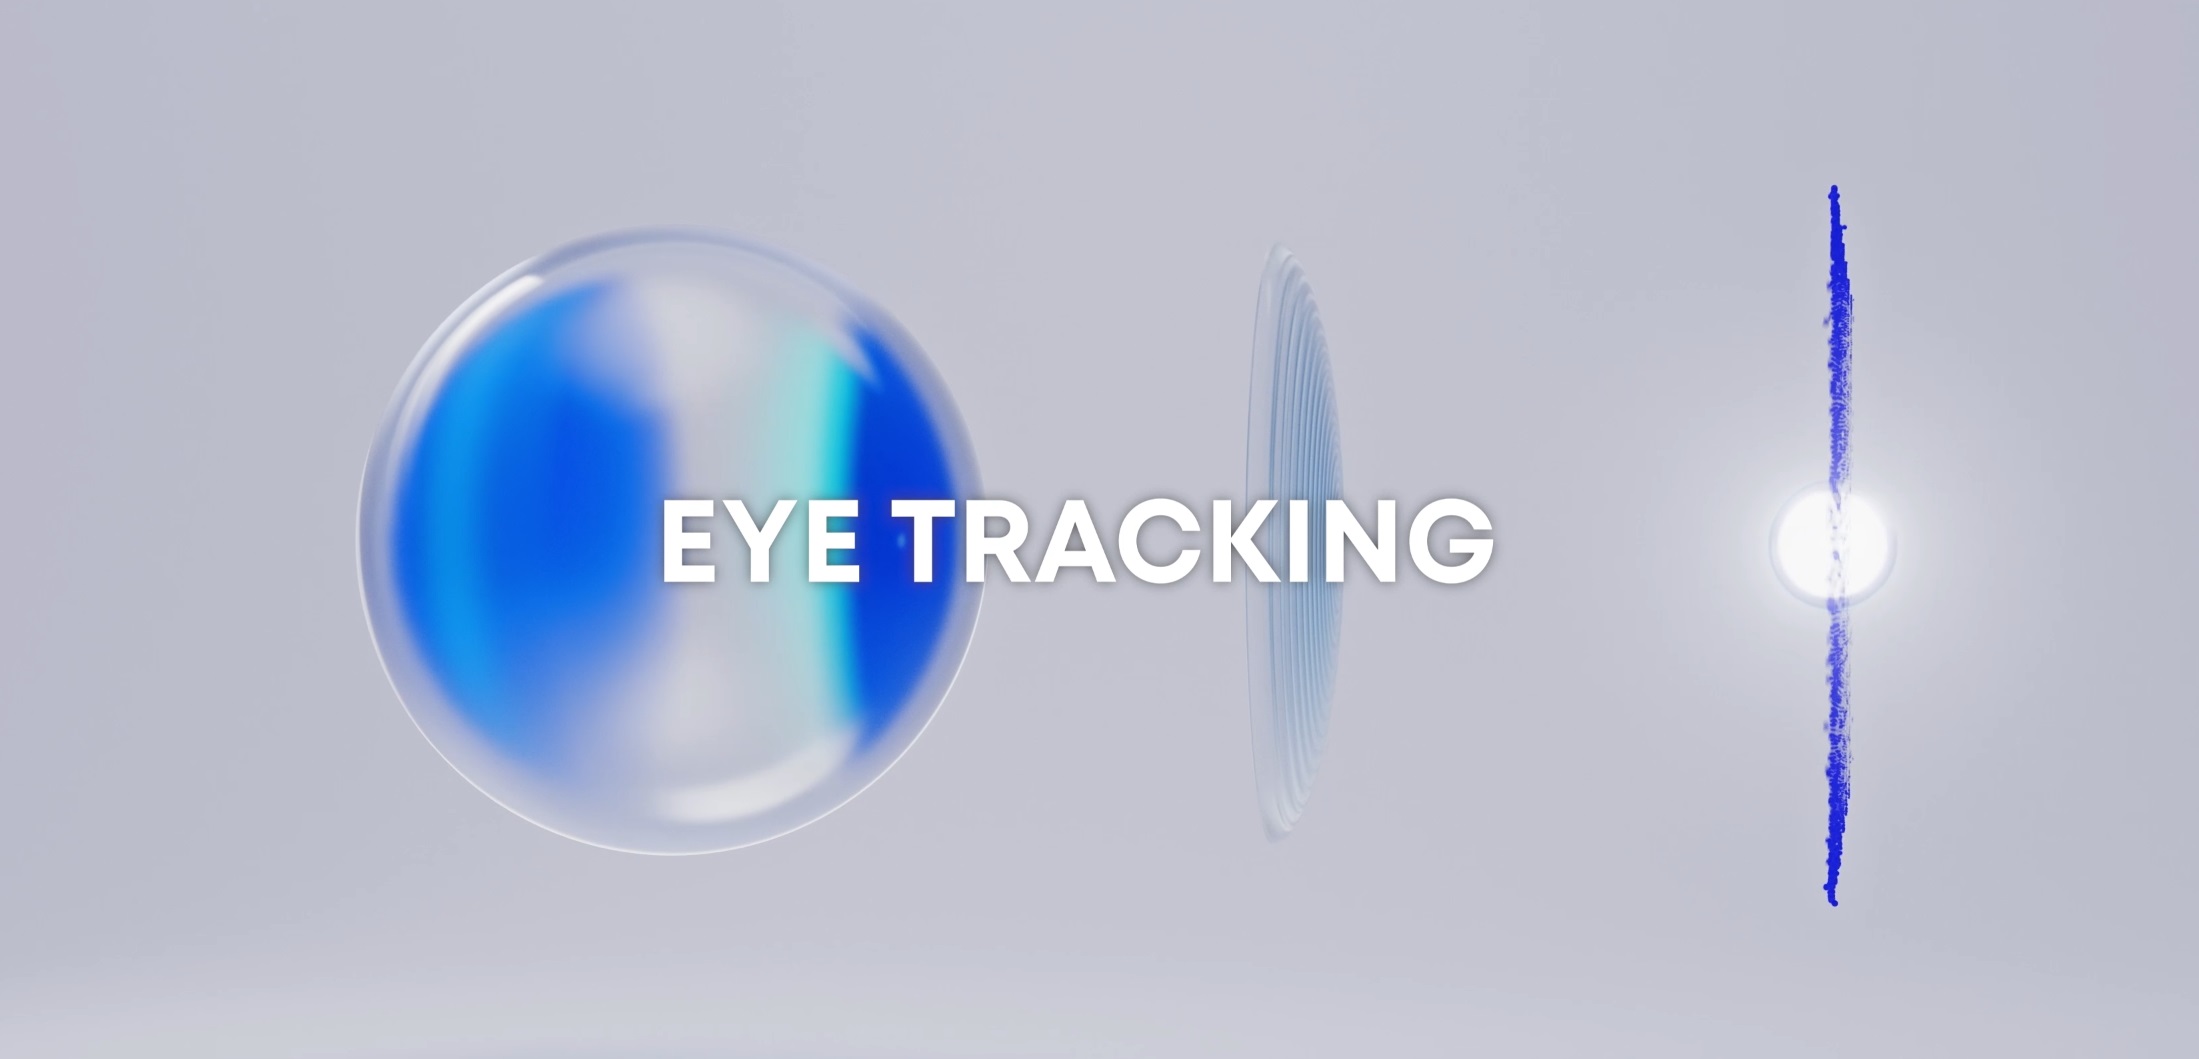 psvr 2 eye tracking